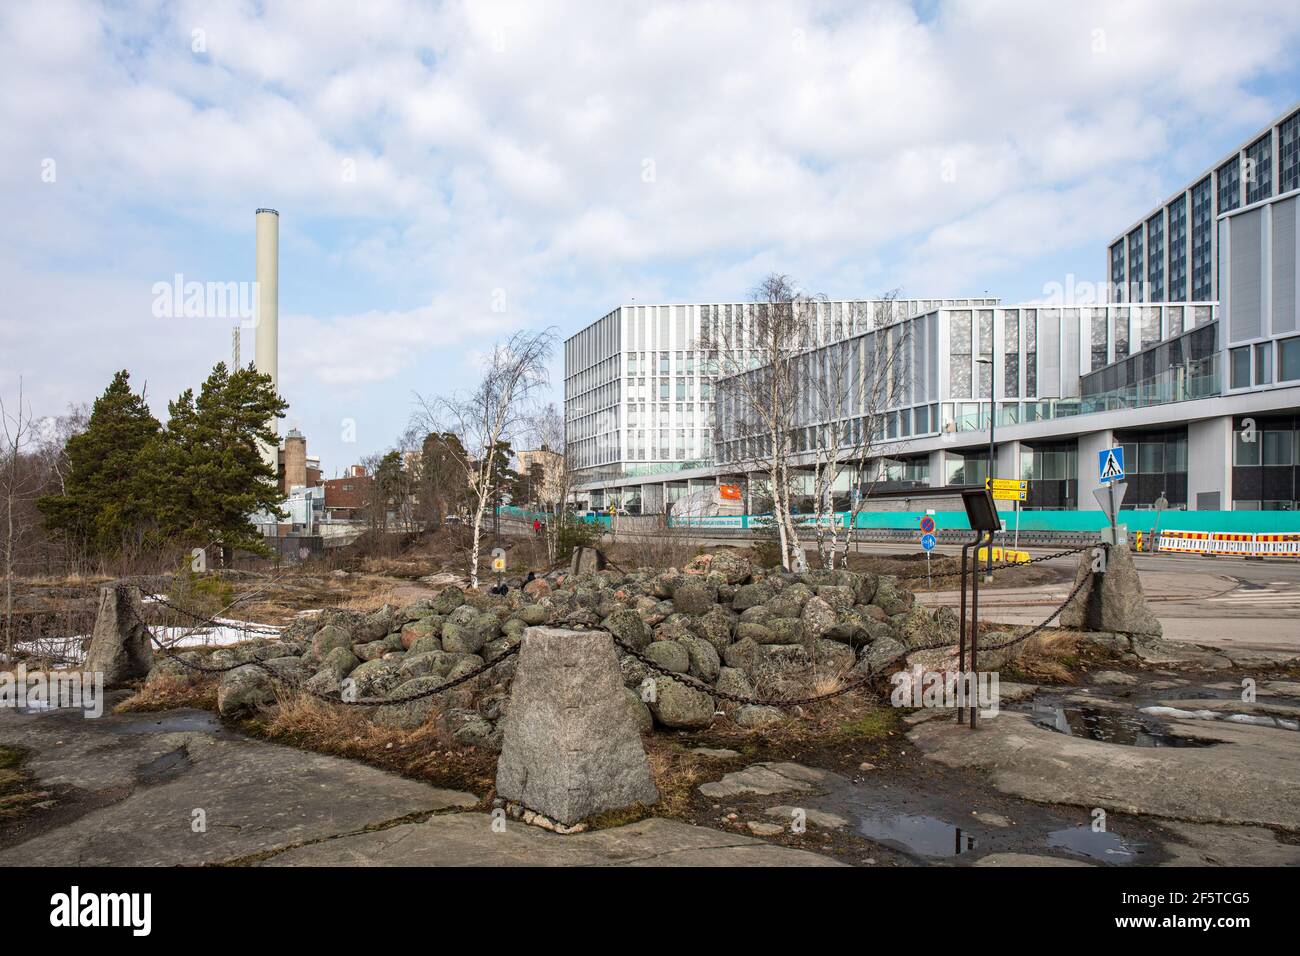 Bronzezeit Kairngrab oder Grab mit Meilahti Krankenhäusern im Bakakground in Helsinki, Finnland Stockfoto